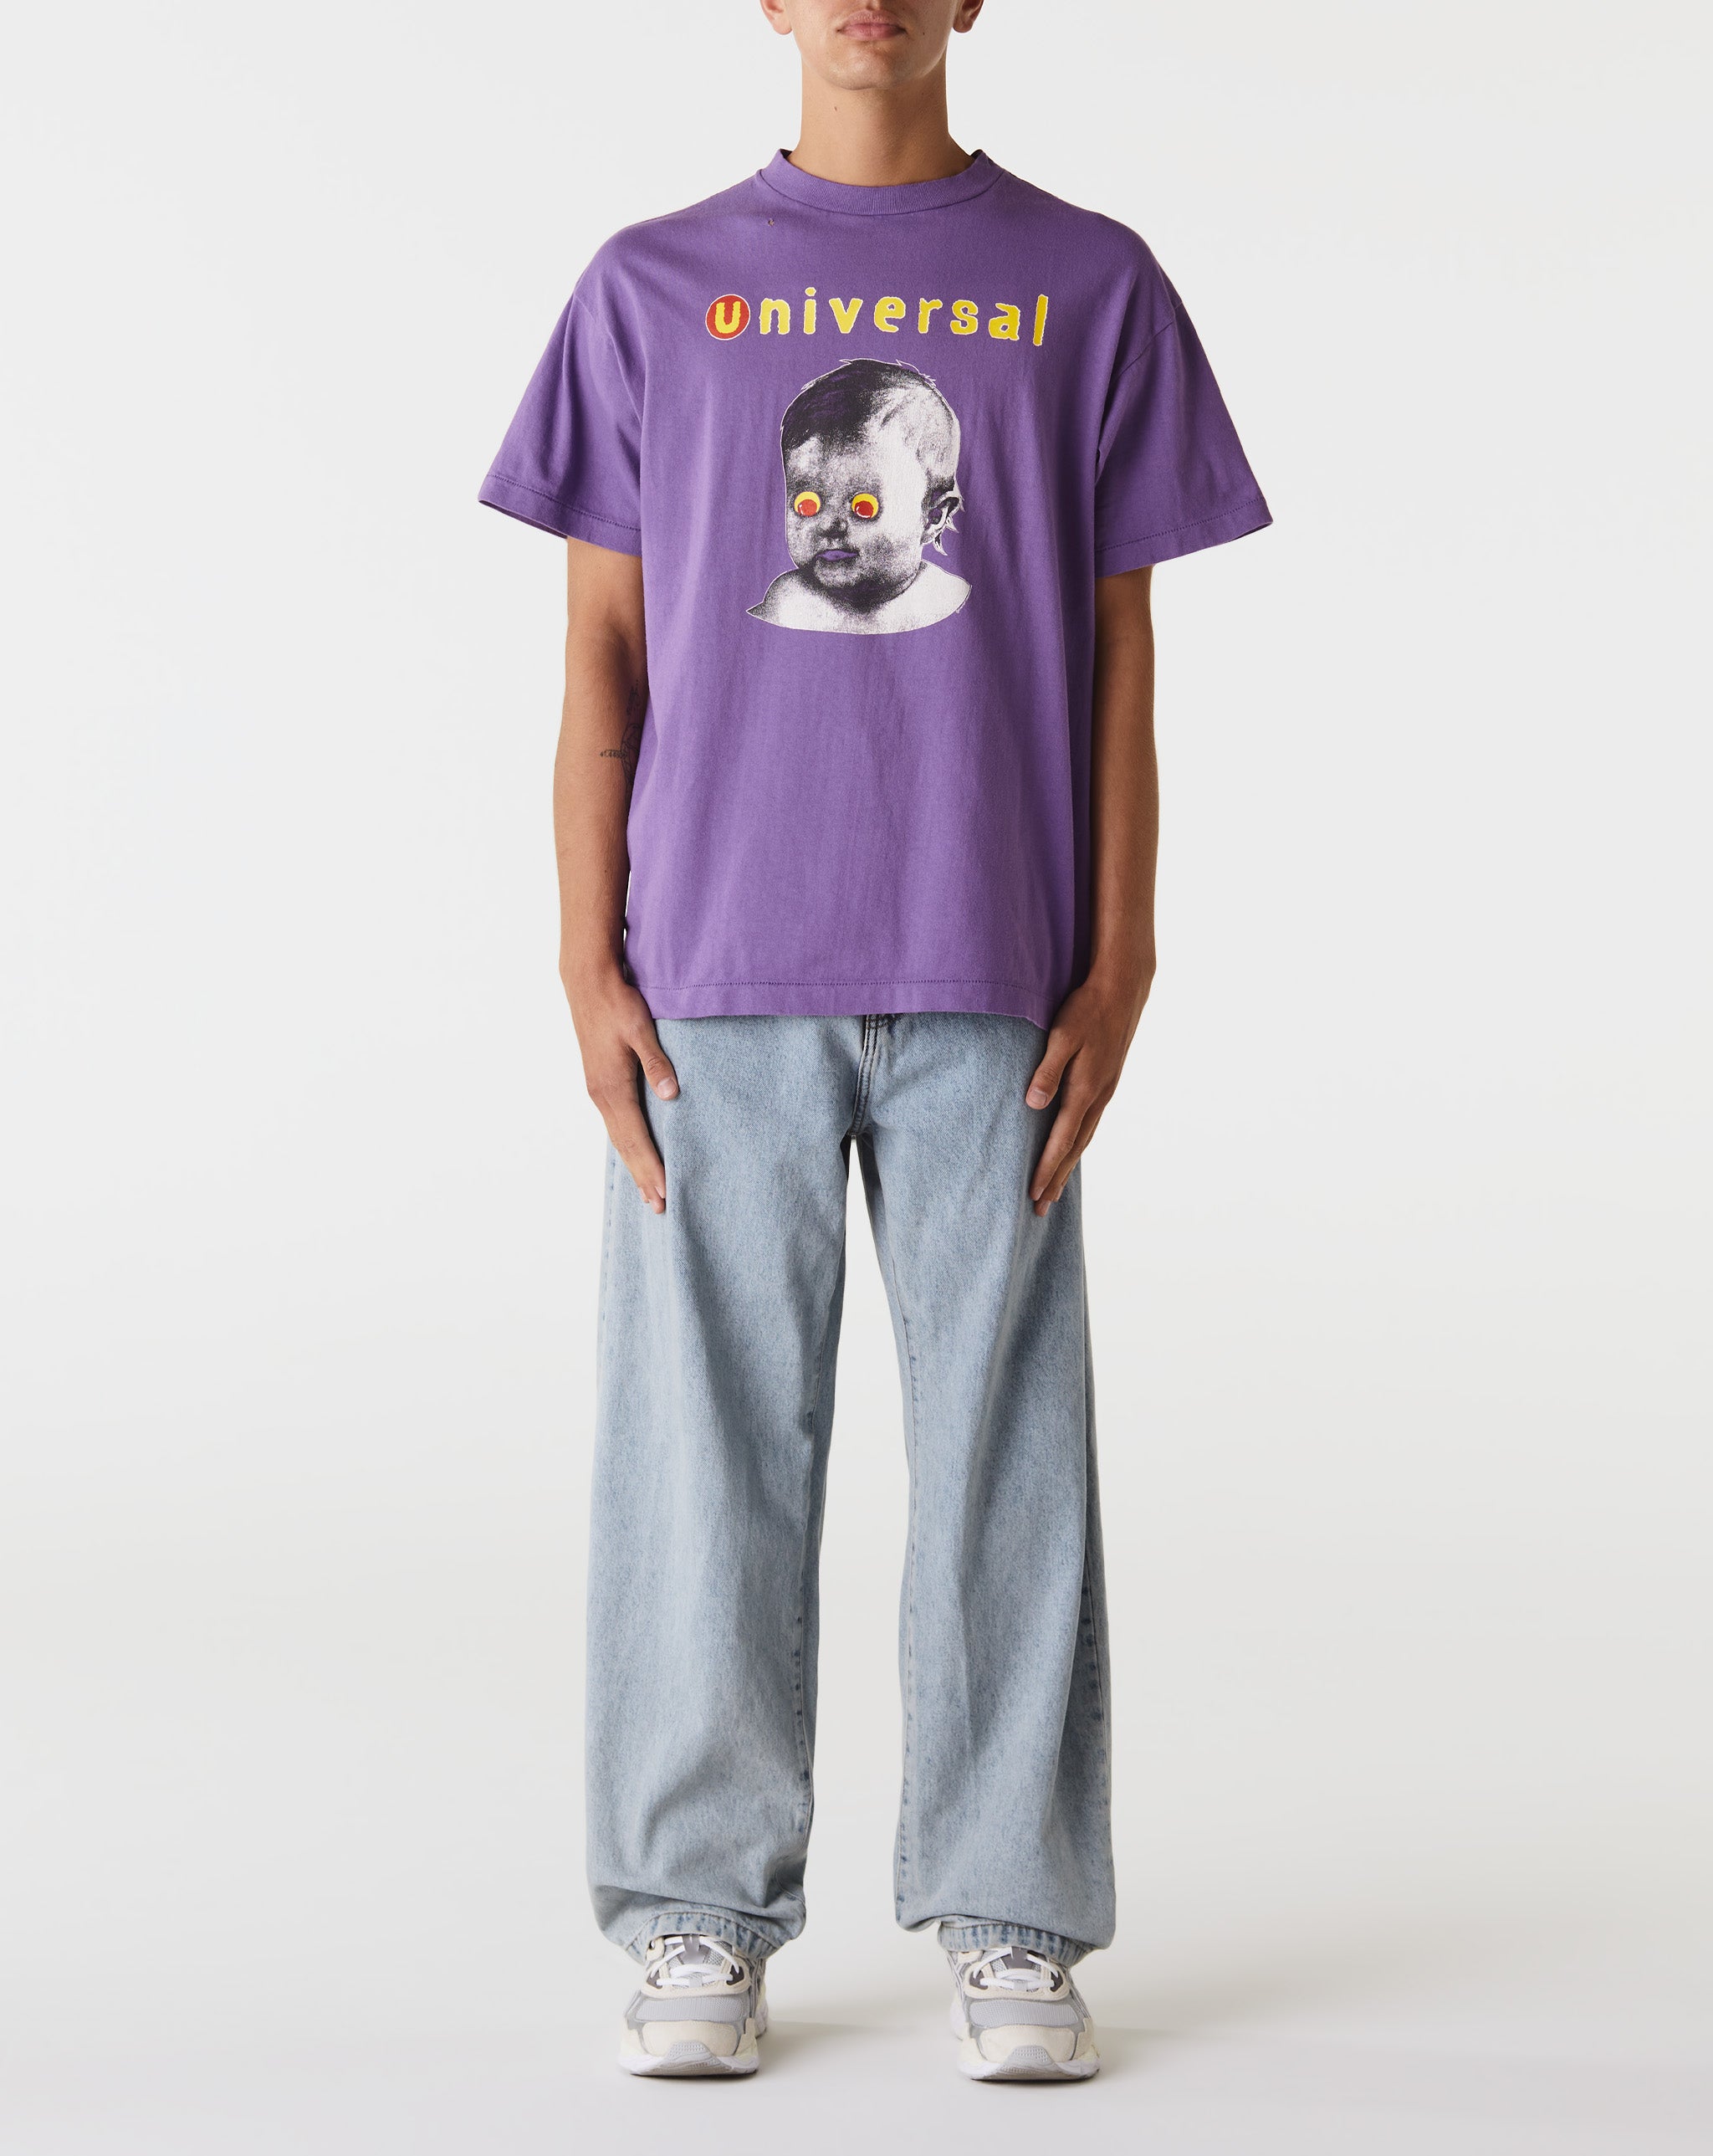 Saint Michael Universal T-Shirt  - Cheap Urlfreeze Jordan outlet